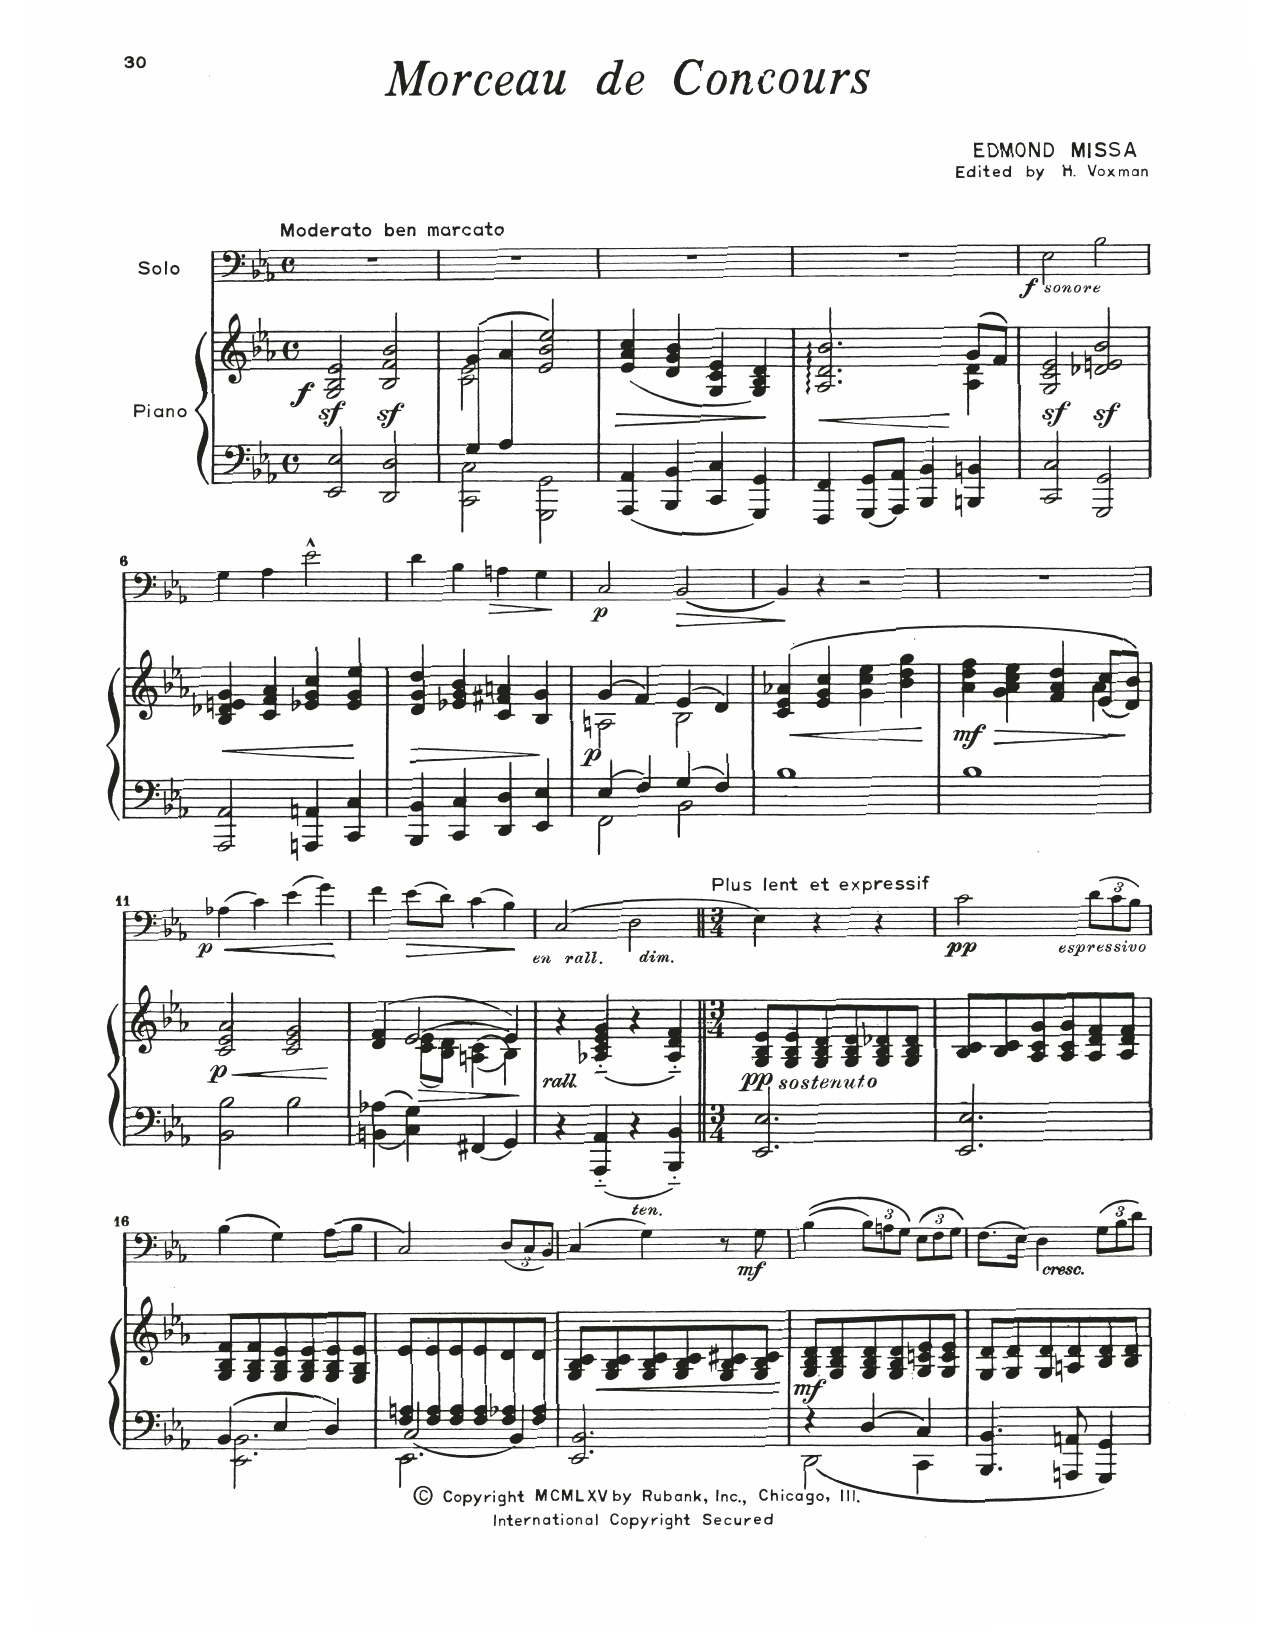 Edmond Missa Morceau De Concours sheet music notes and chords. Download Printable PDF.